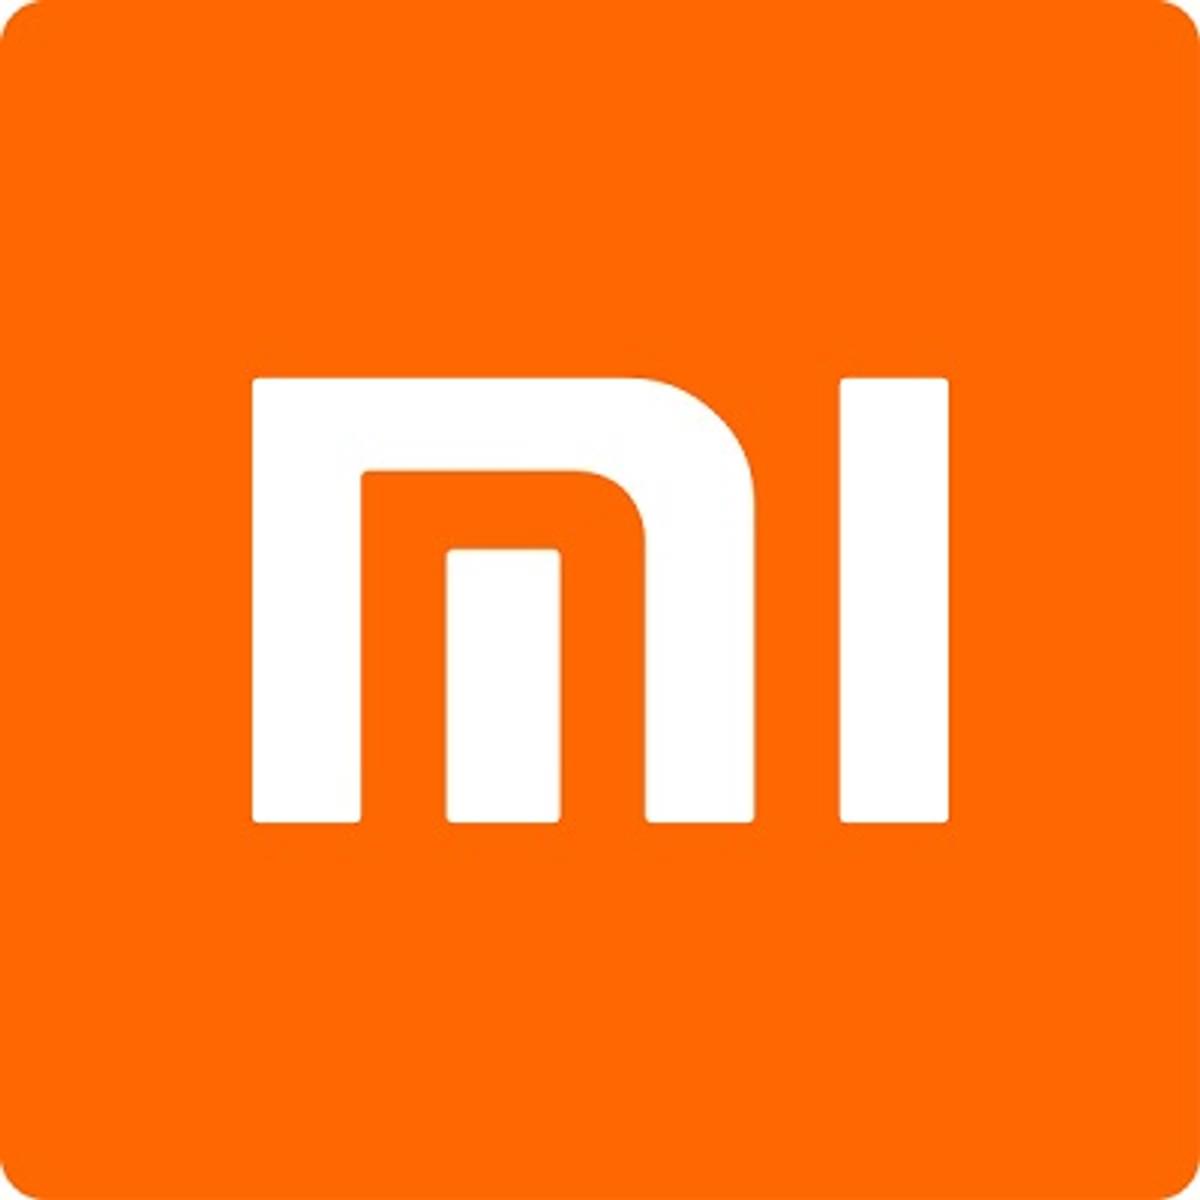 Counterpoint: Xiaomi in juni grootste smartphonefabrikant image